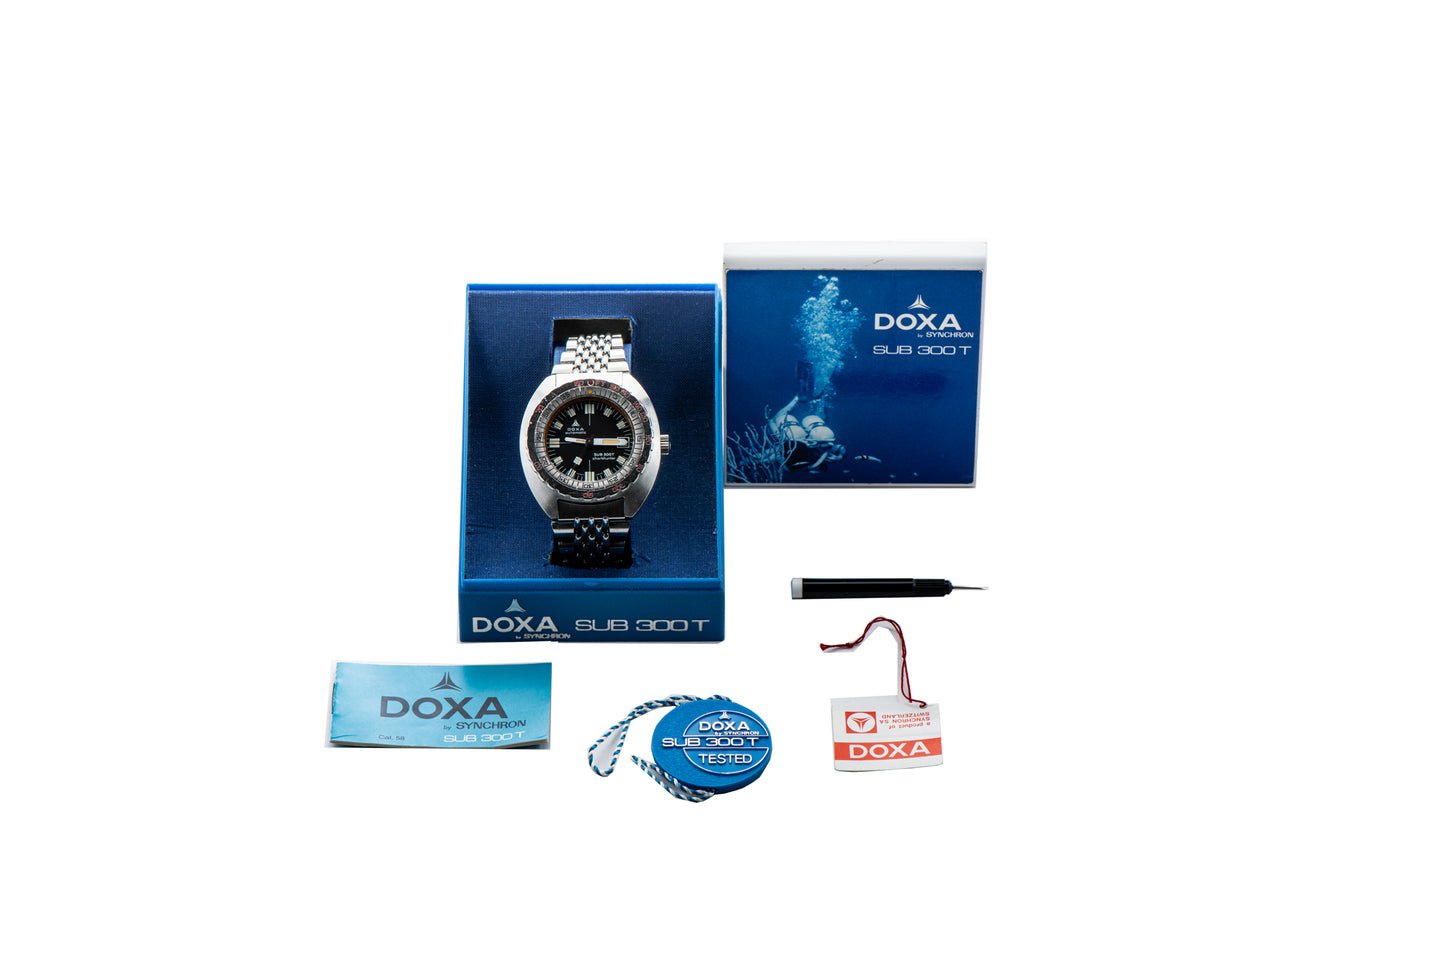 DOXA Sub 300T Sharkhunter